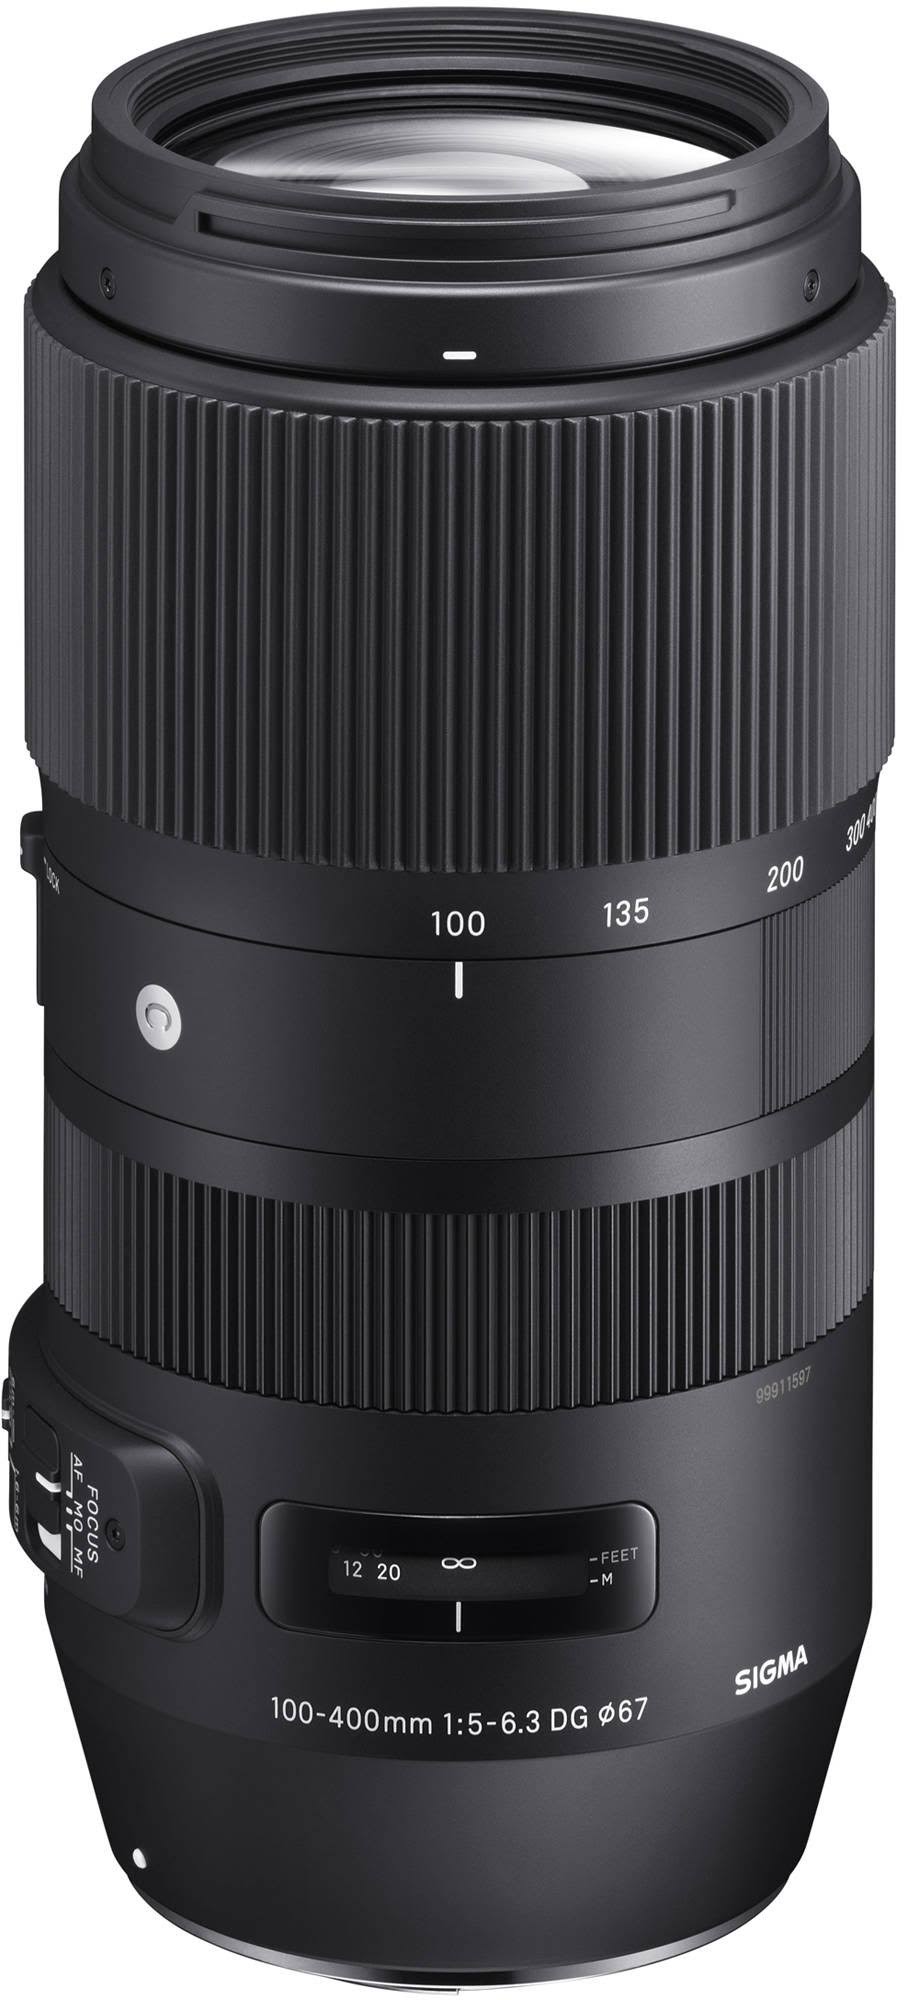 SIGMA Współczesny obiektyw 100-400mm f/5-6.3 DG OS HSM do Nikona F